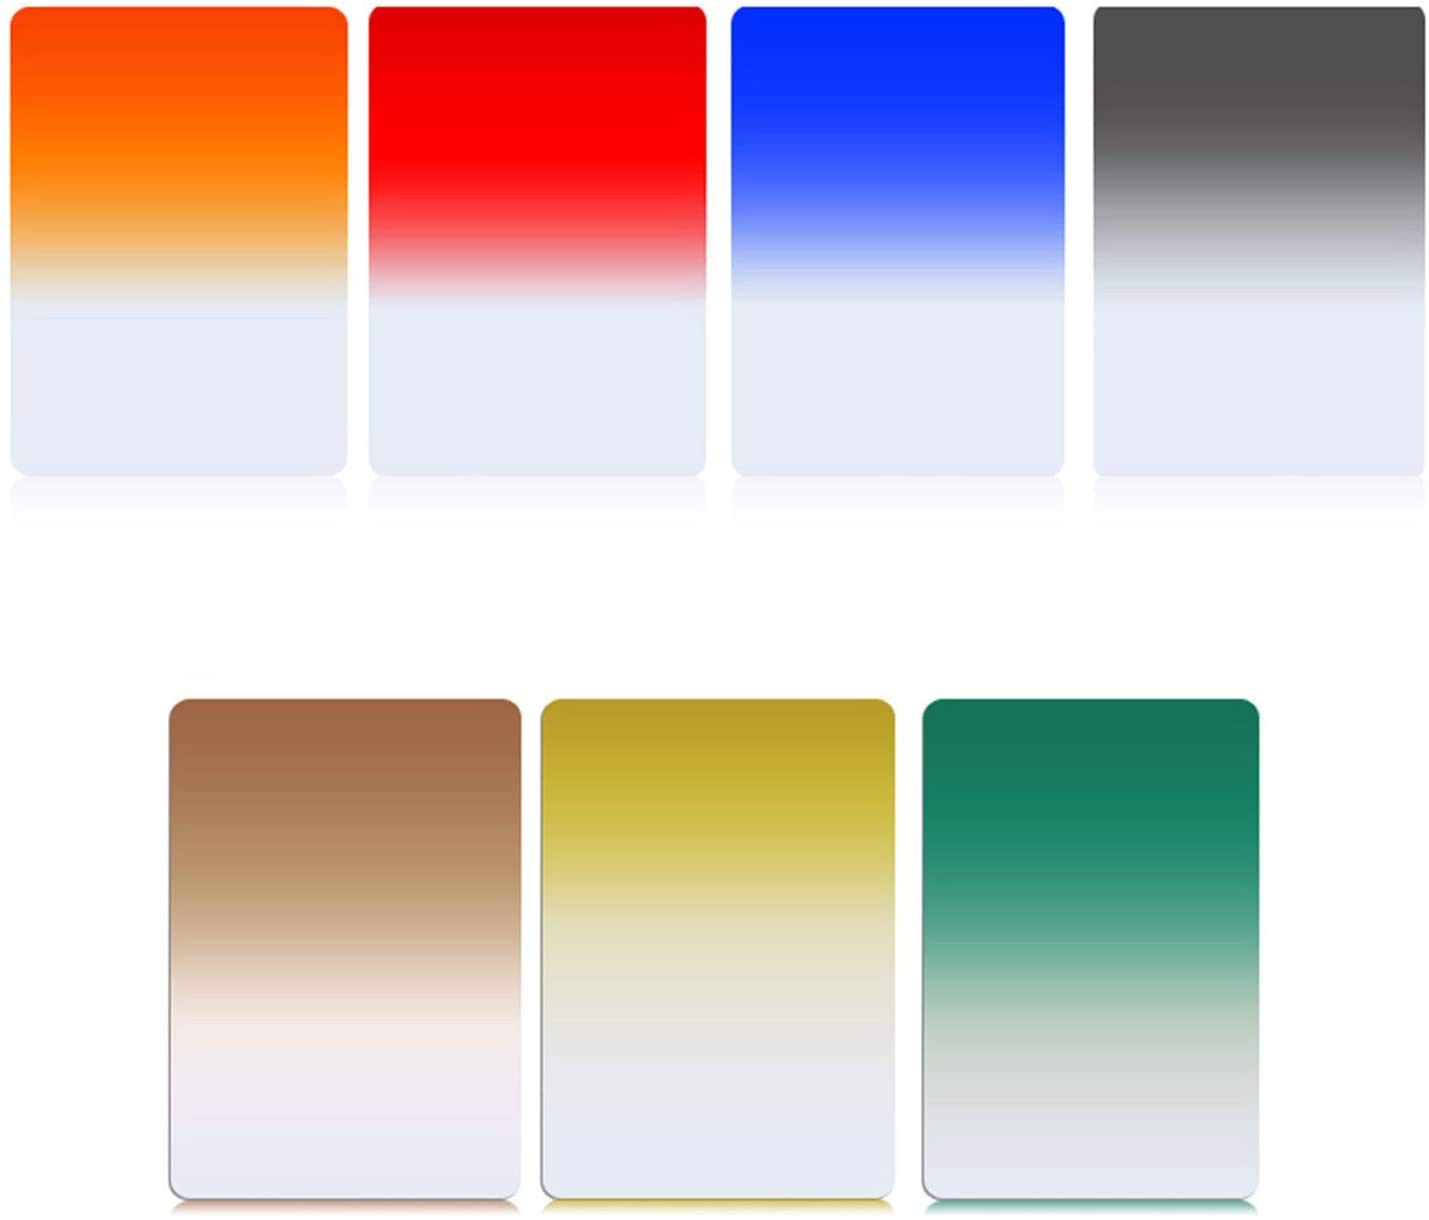 Zomei Sieben in einem 150 mm x 100 mm abgestuften quadratischen Filter 7-Farben-Filter-Kits für die Cokin Z-Serie